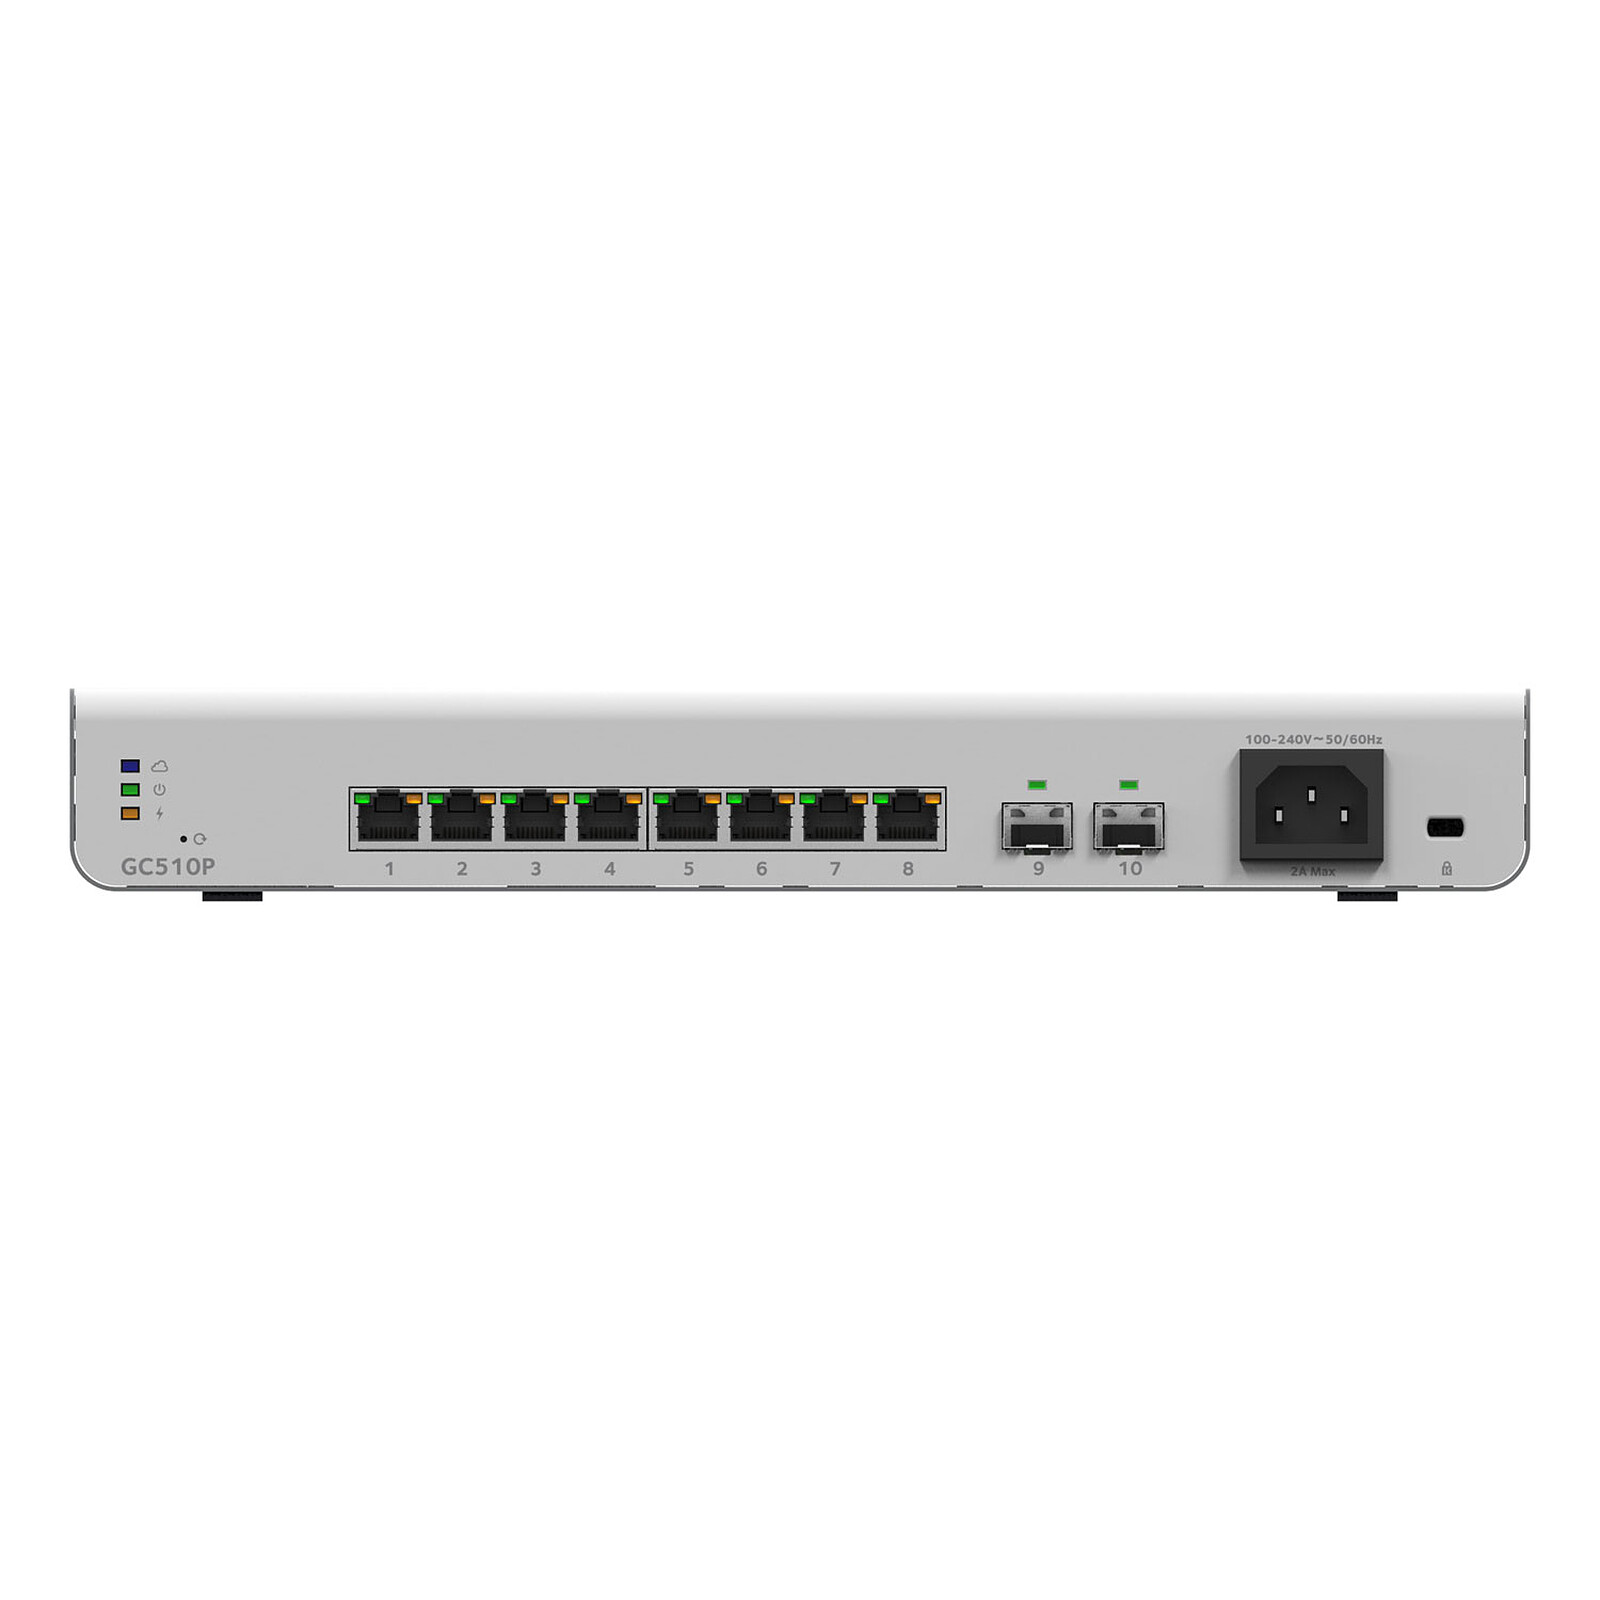 Netgear GS724TPv3 - Switch - LDLC